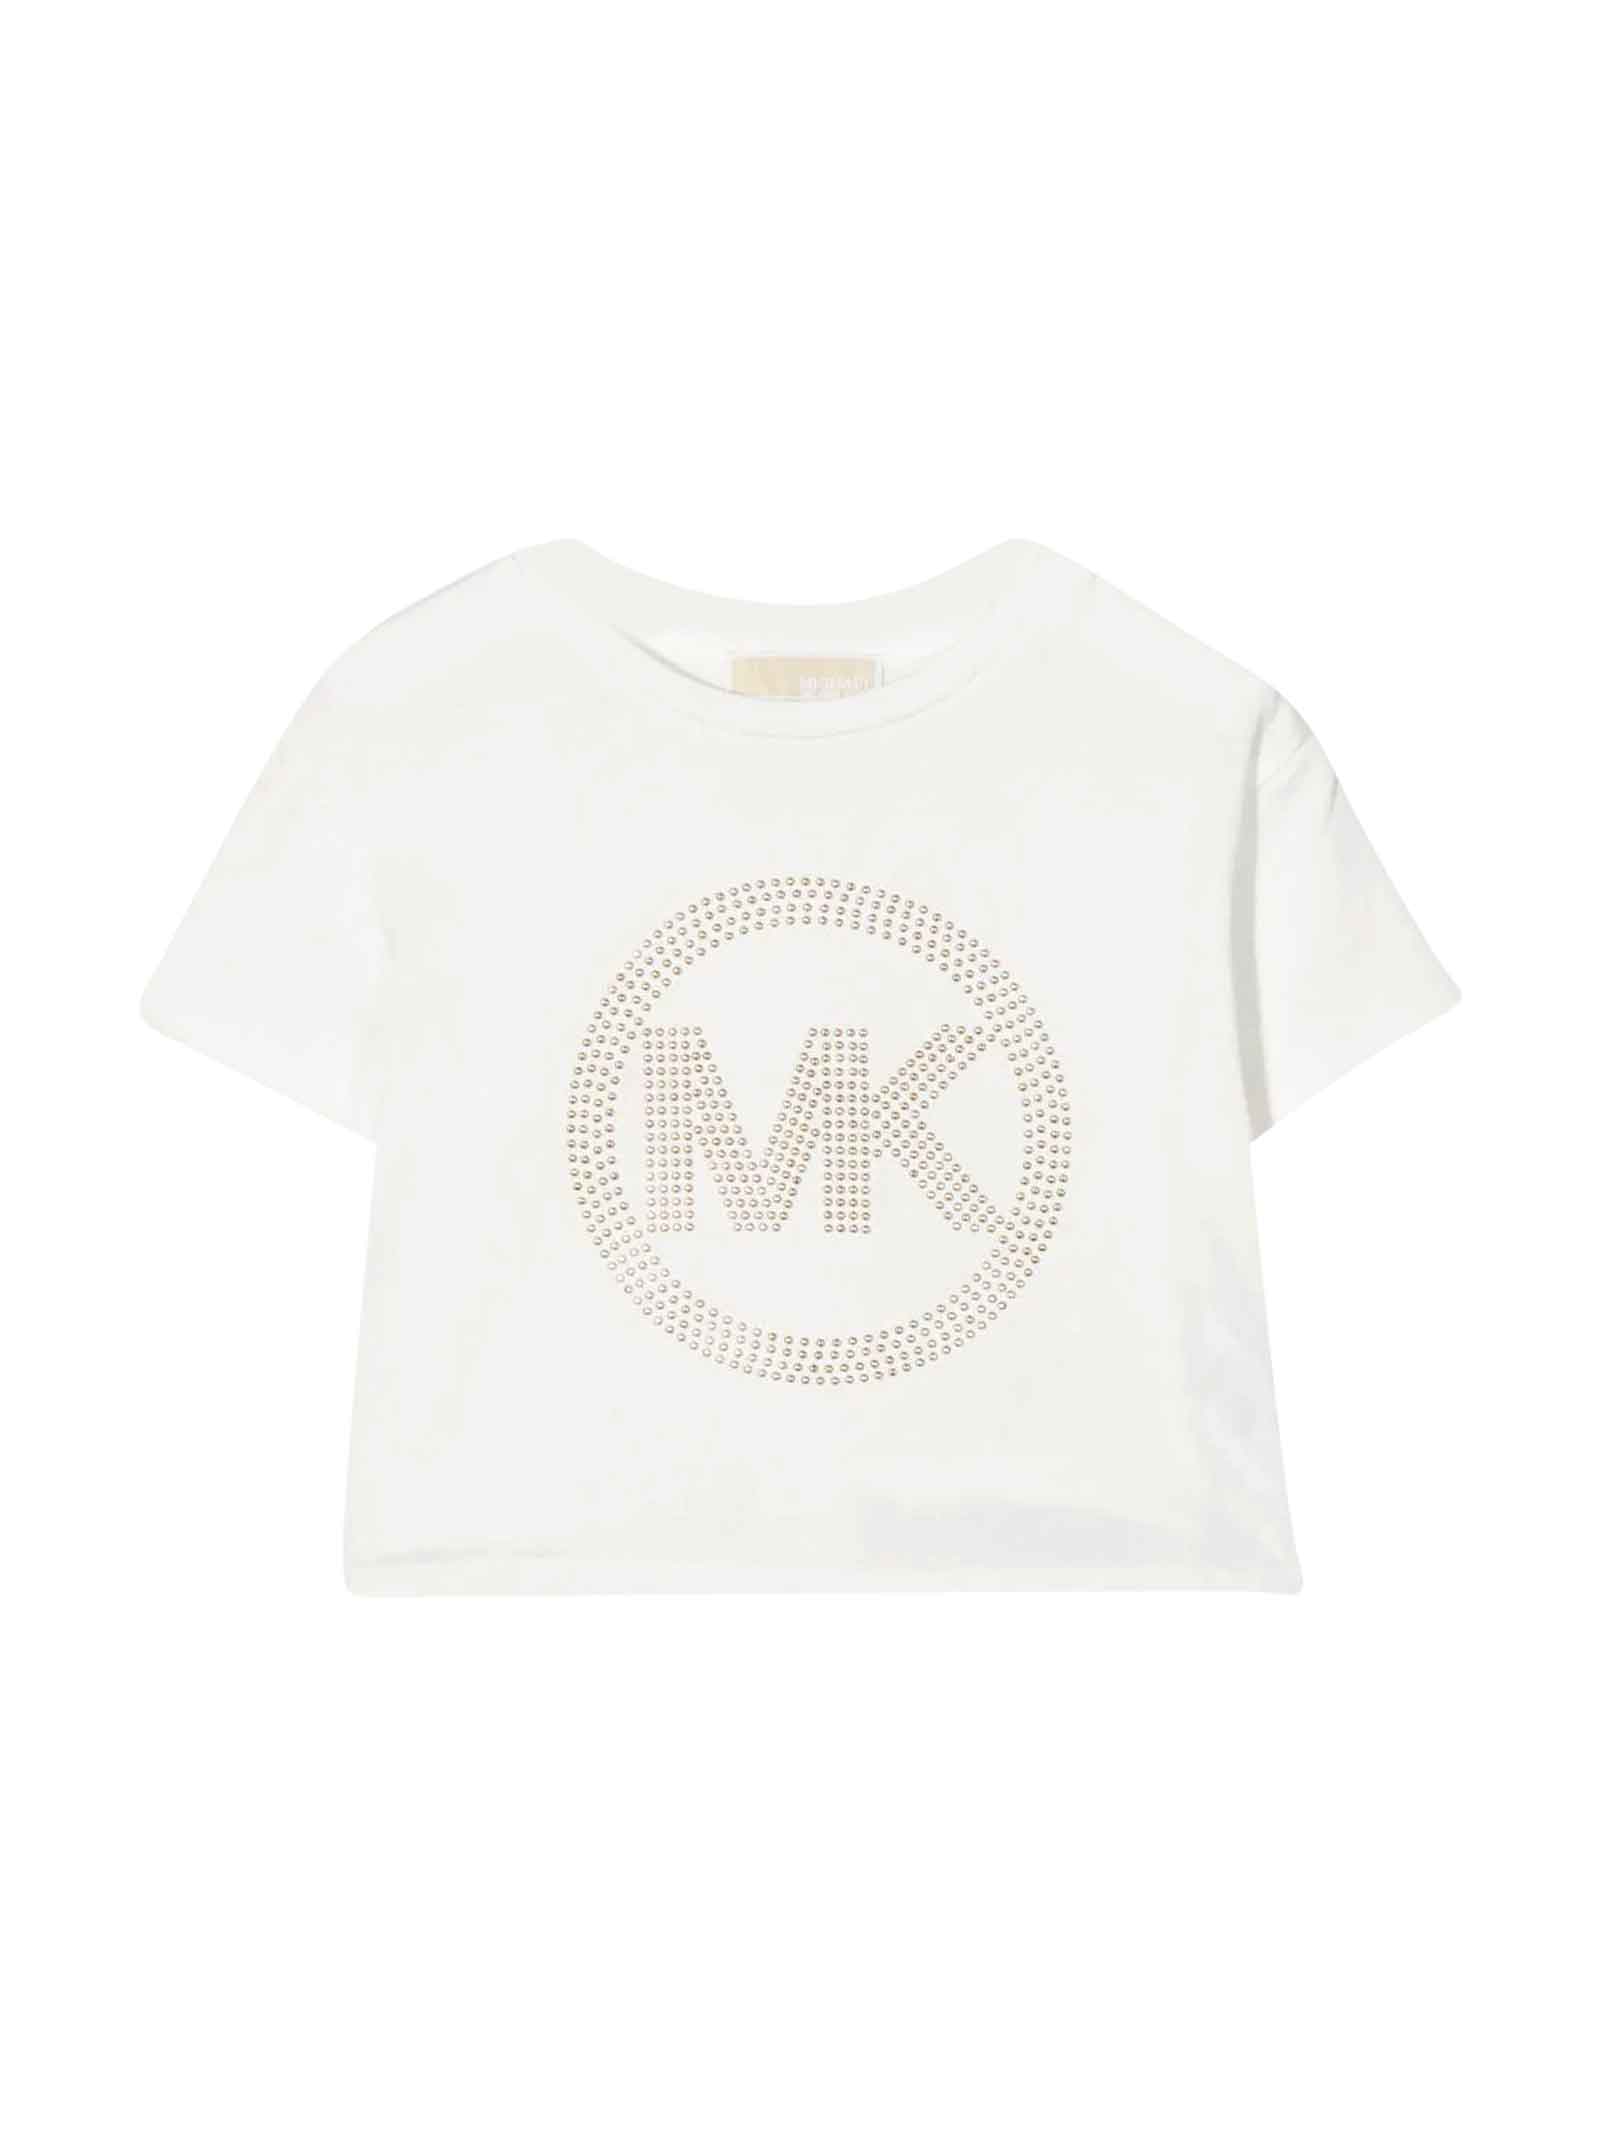 Michael Kors White T-shirt Girl.